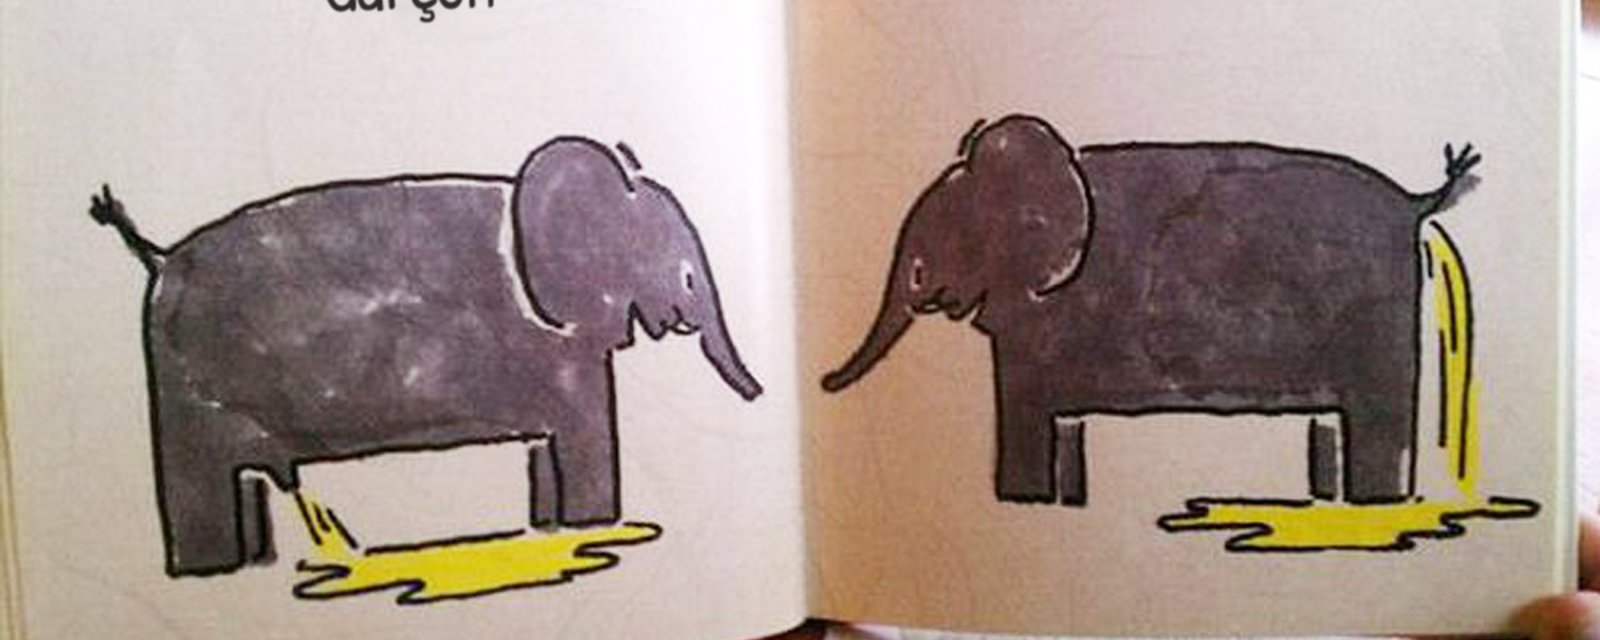 18 images de livres pour enfants, qui suscitent un certain étonnement!